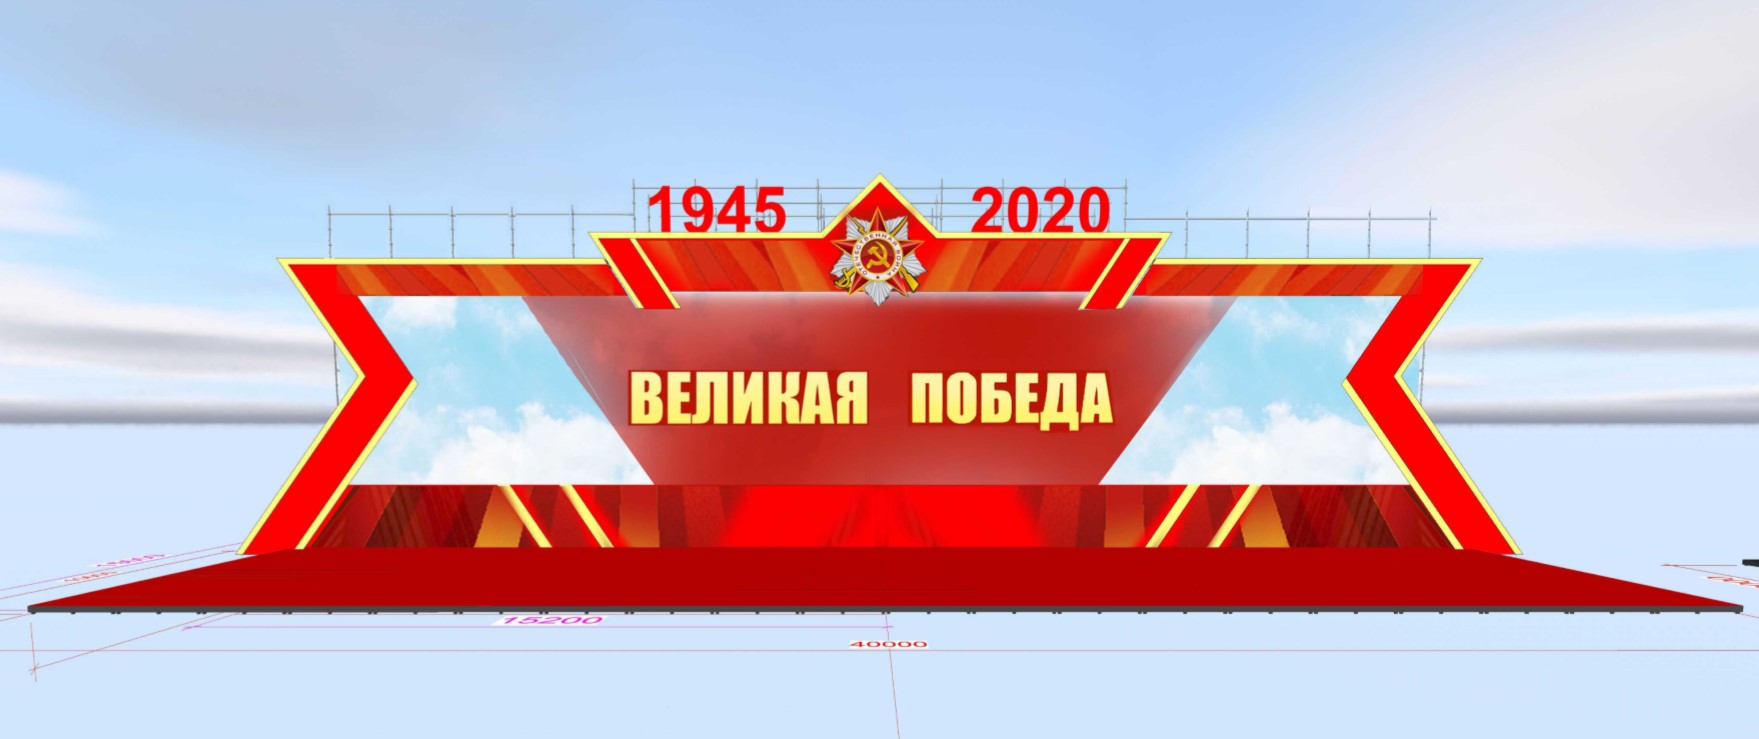 Br600 тыс. потратят на оборудование для концерта и парада Победы в Минске